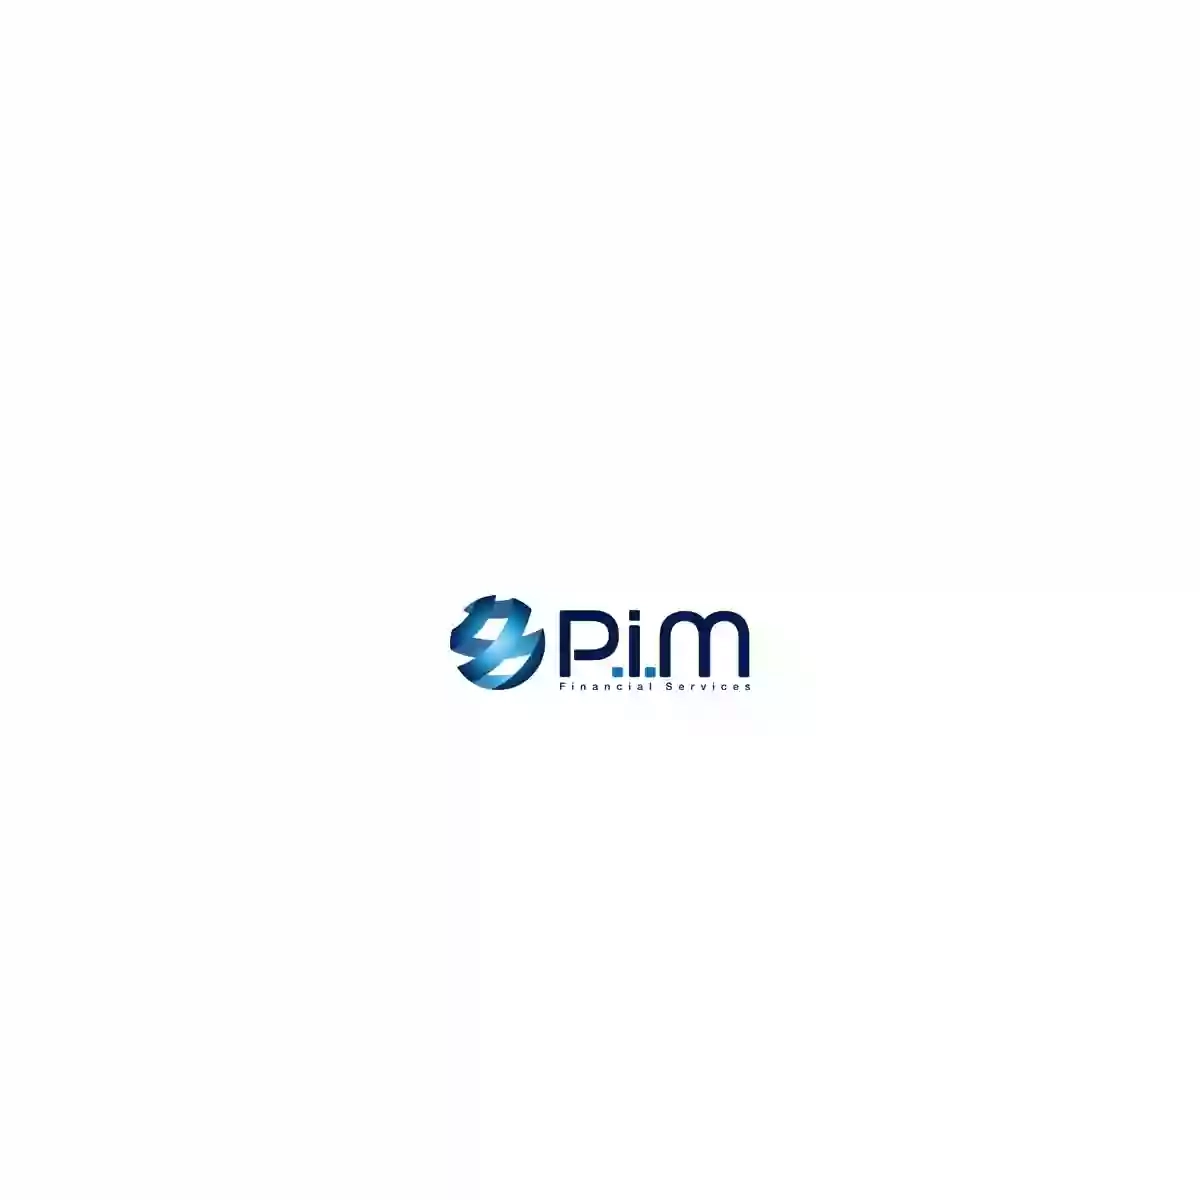 PIM Financial Services